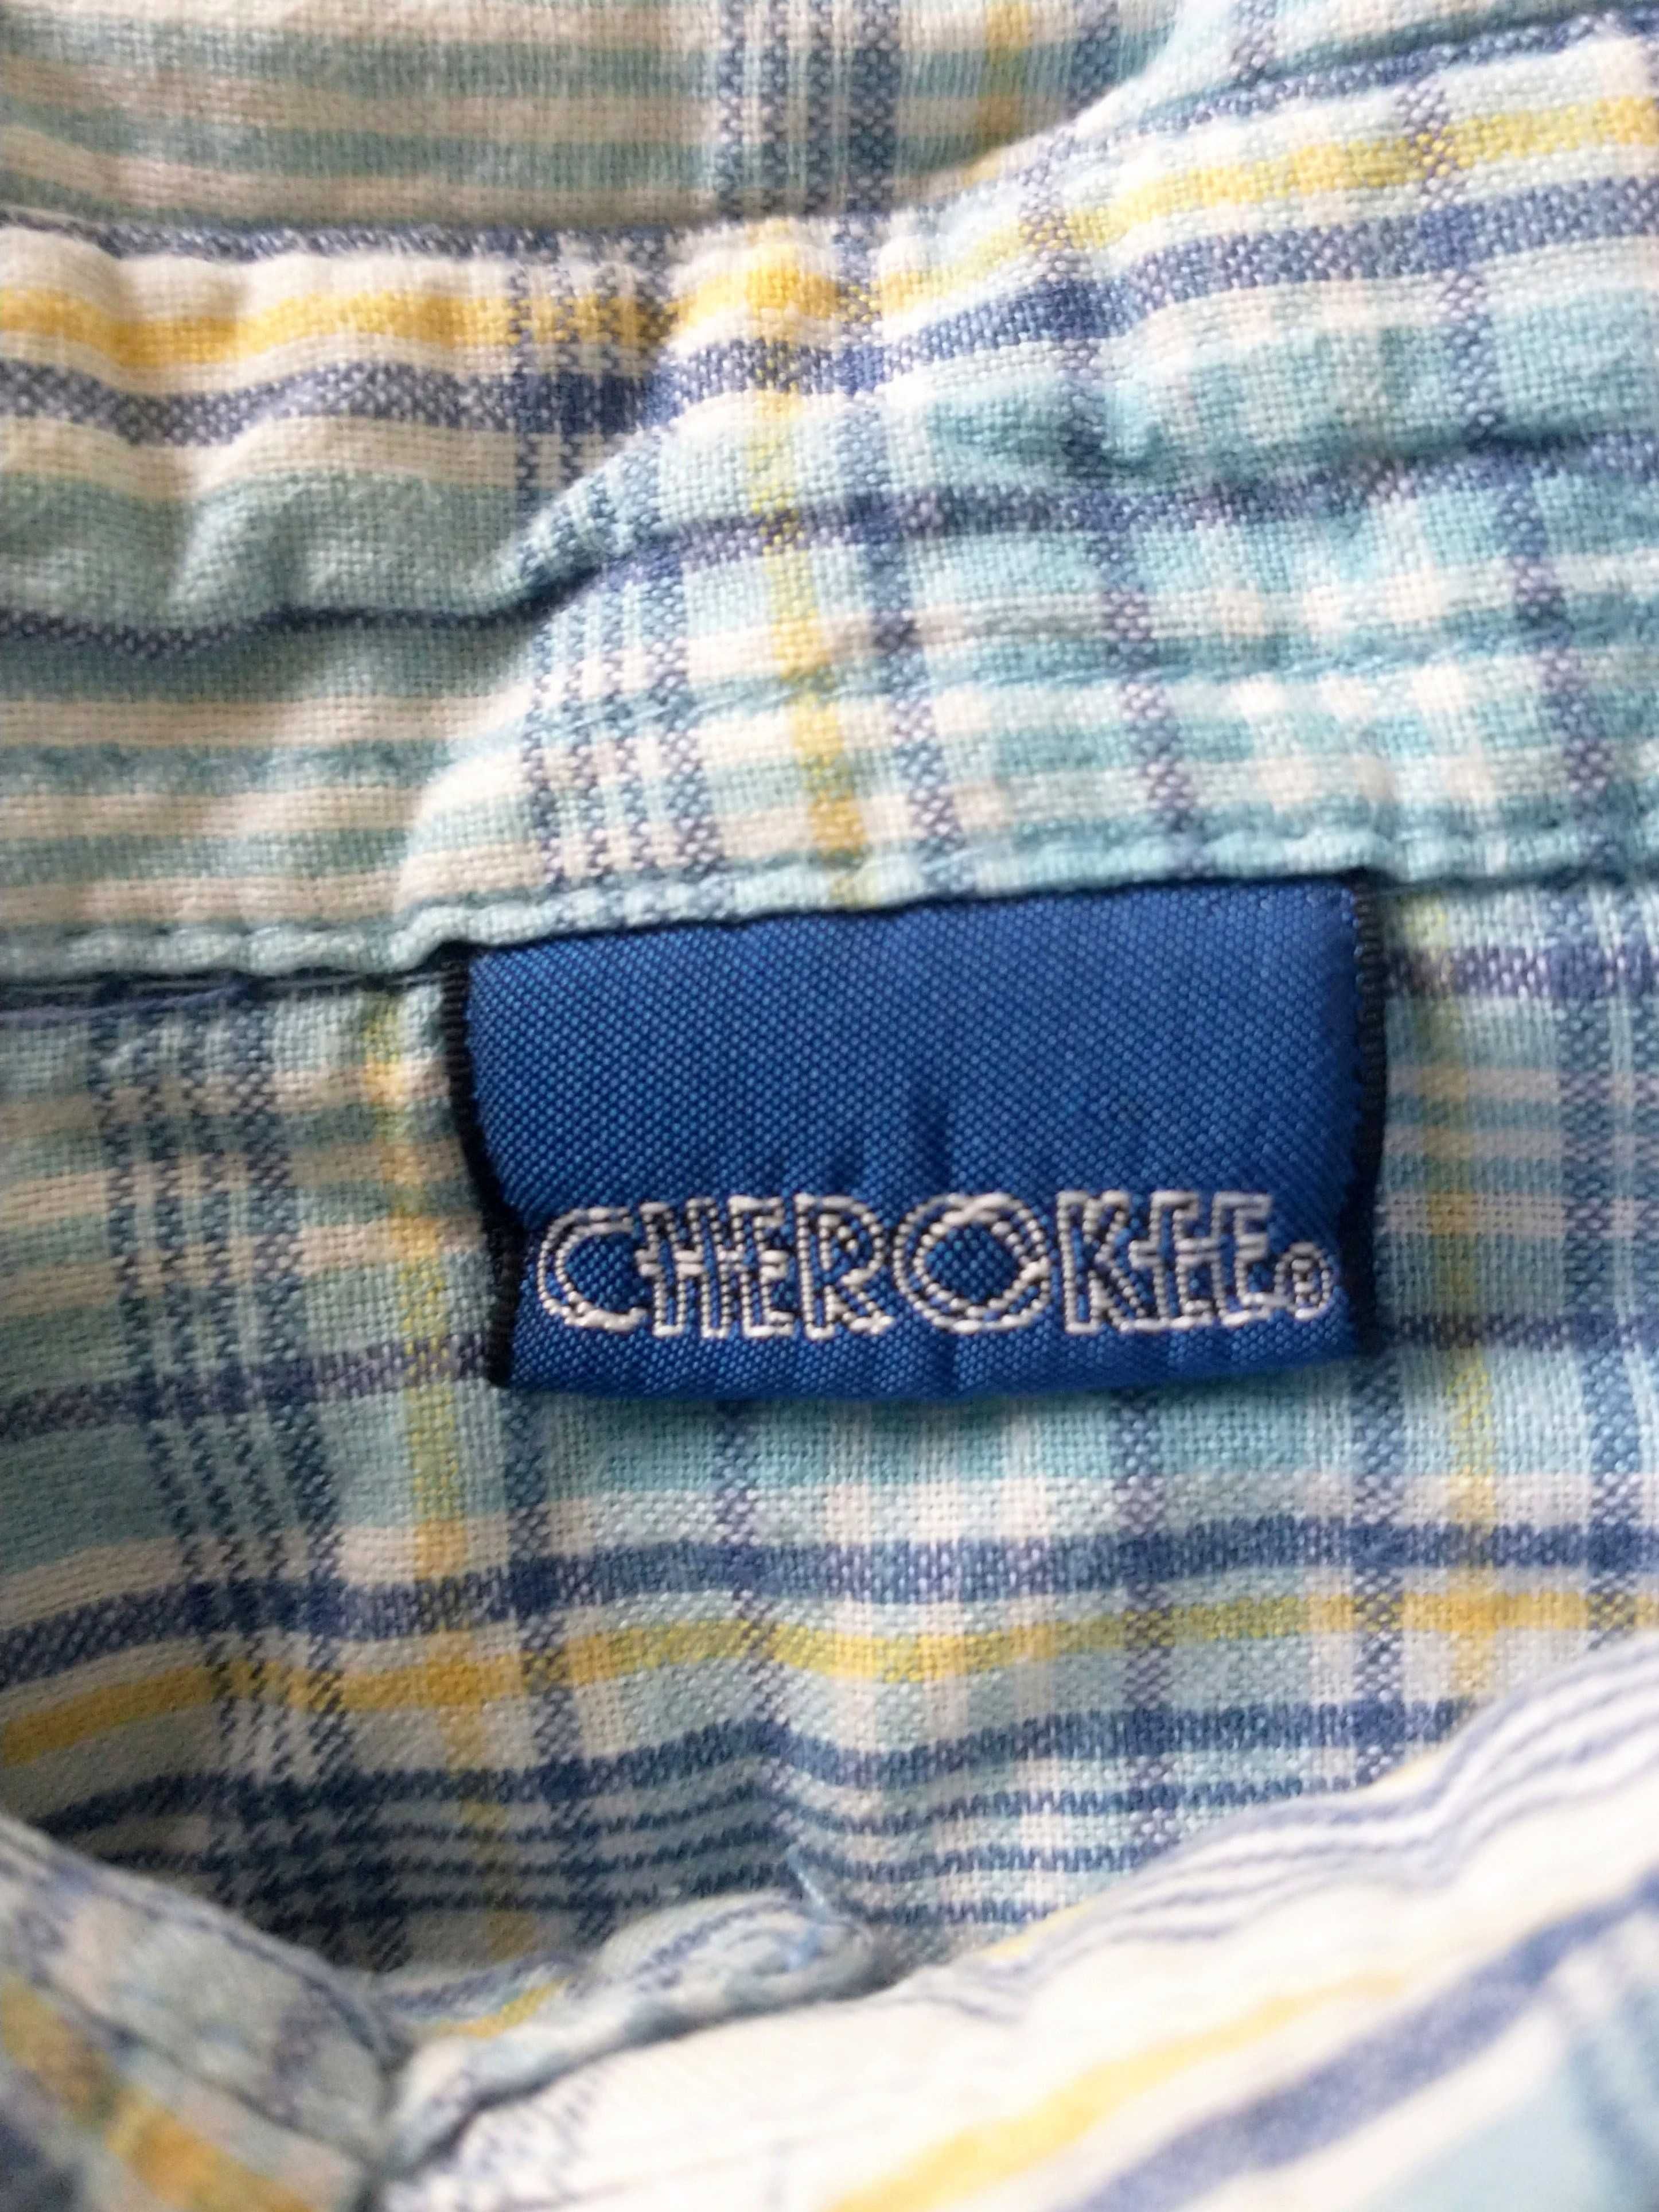 bawełniana koszula z krótkim rękawem marki cherokee rozmiar 104cm